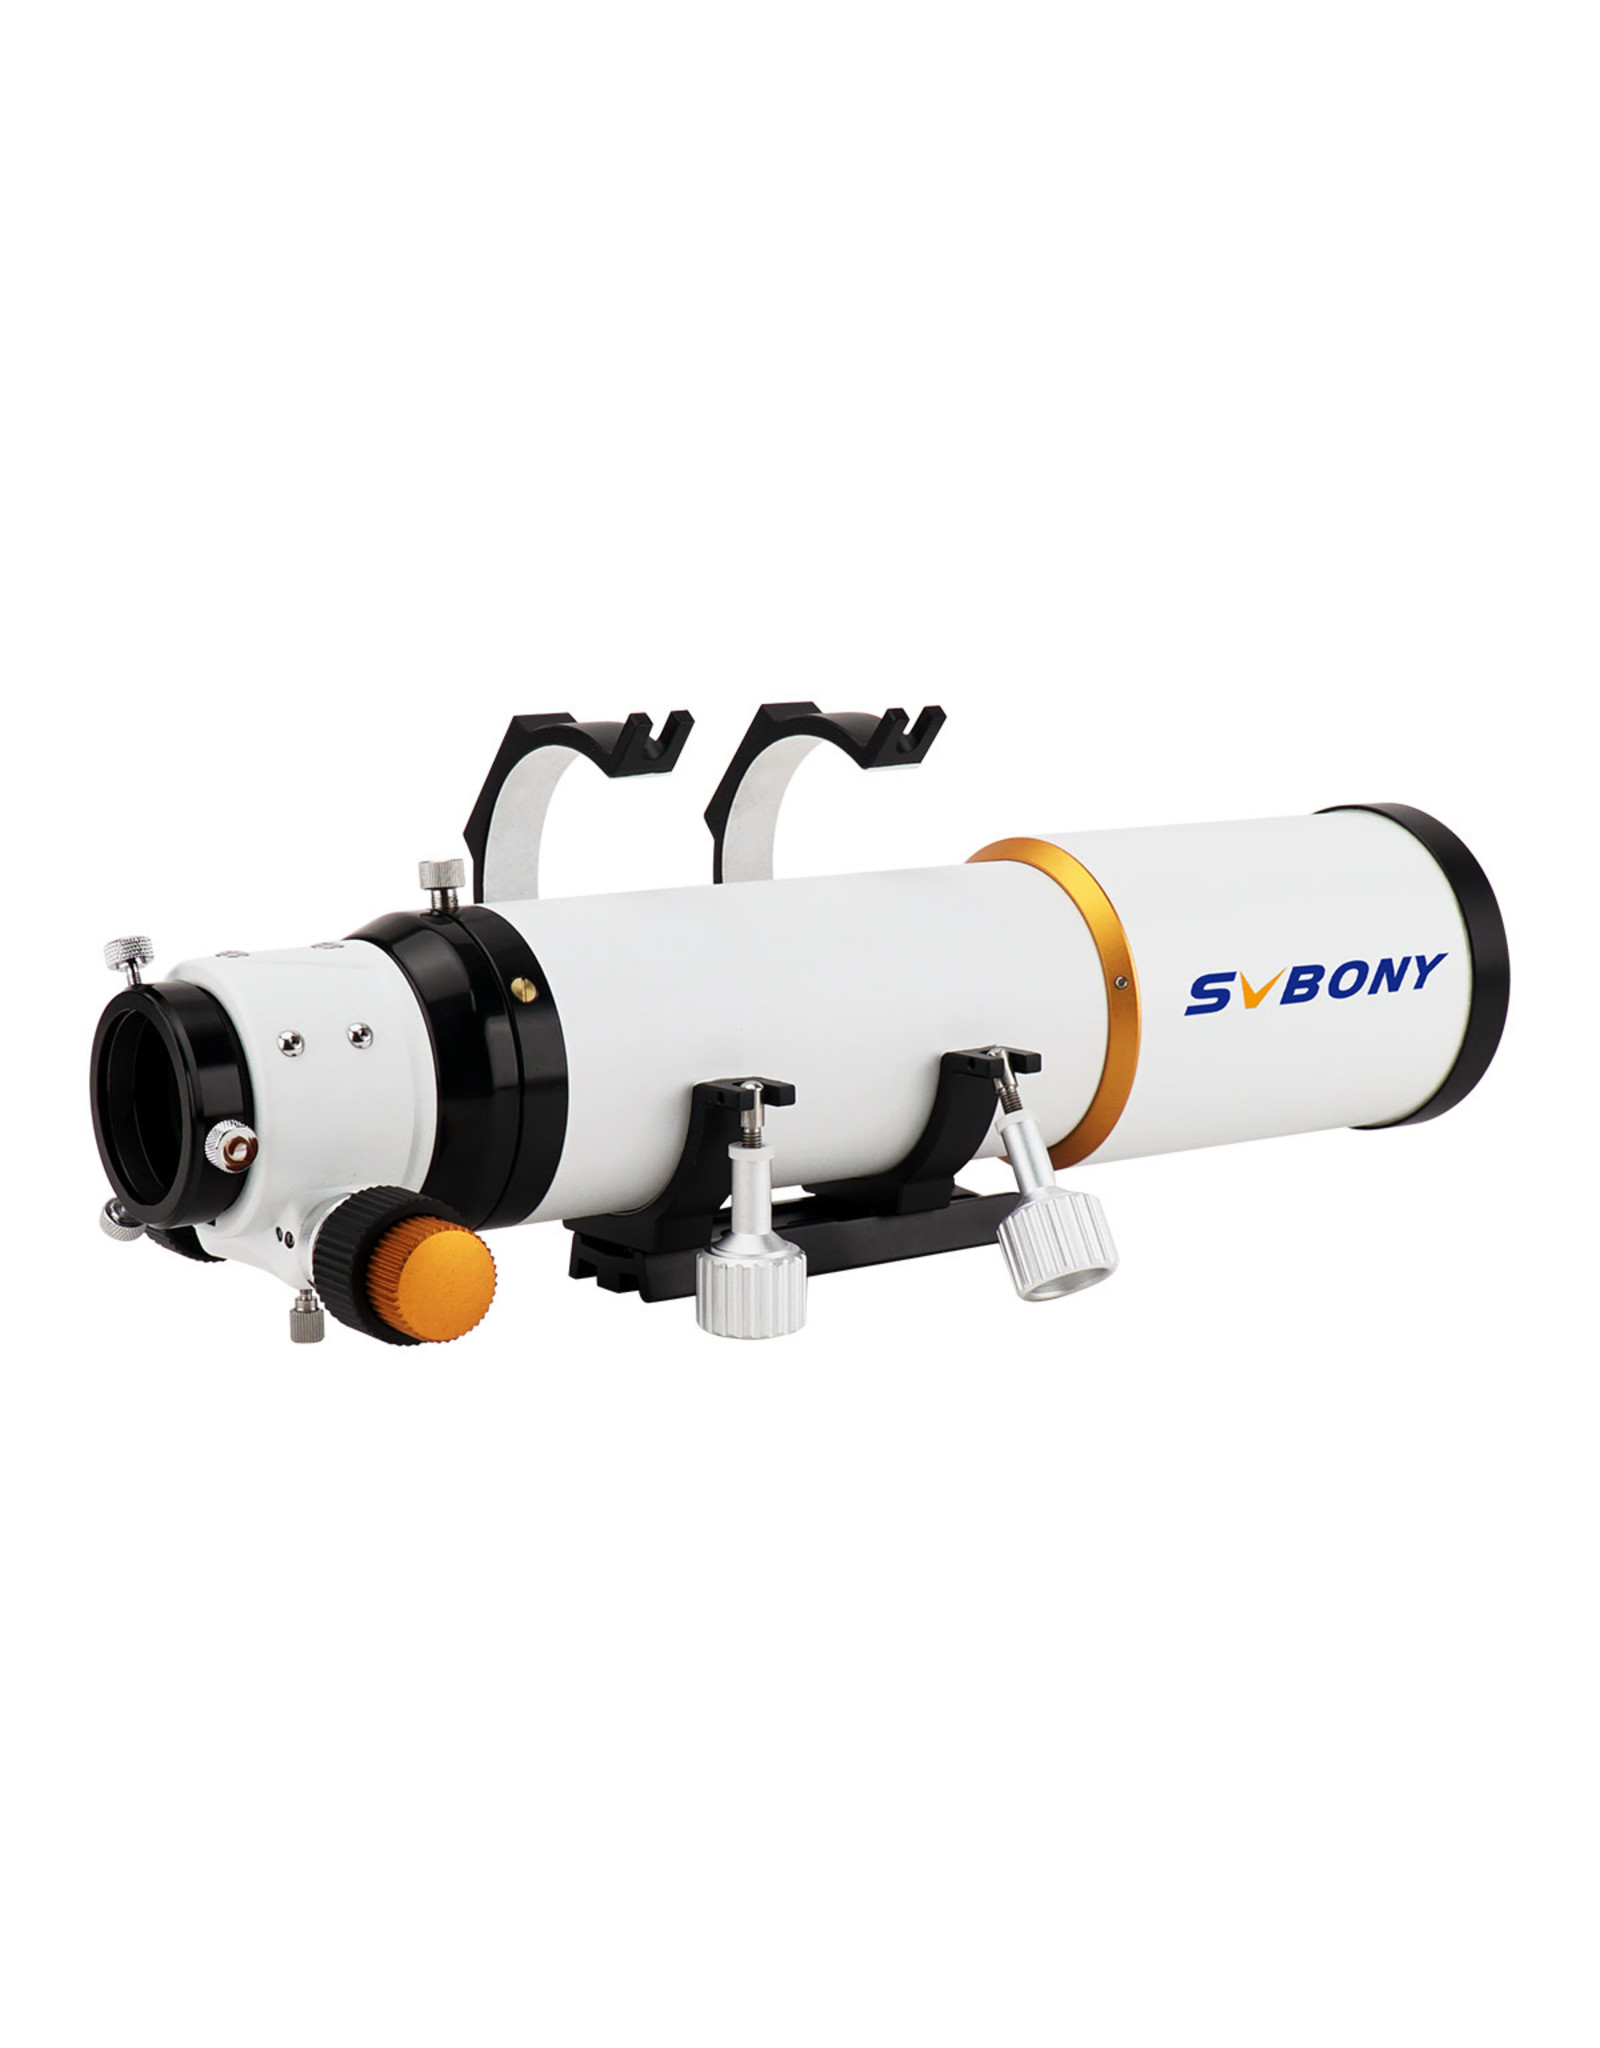 Svbony SVBony SV503 80ED F7 Doublet Refractor Telescope OTA-F9359B